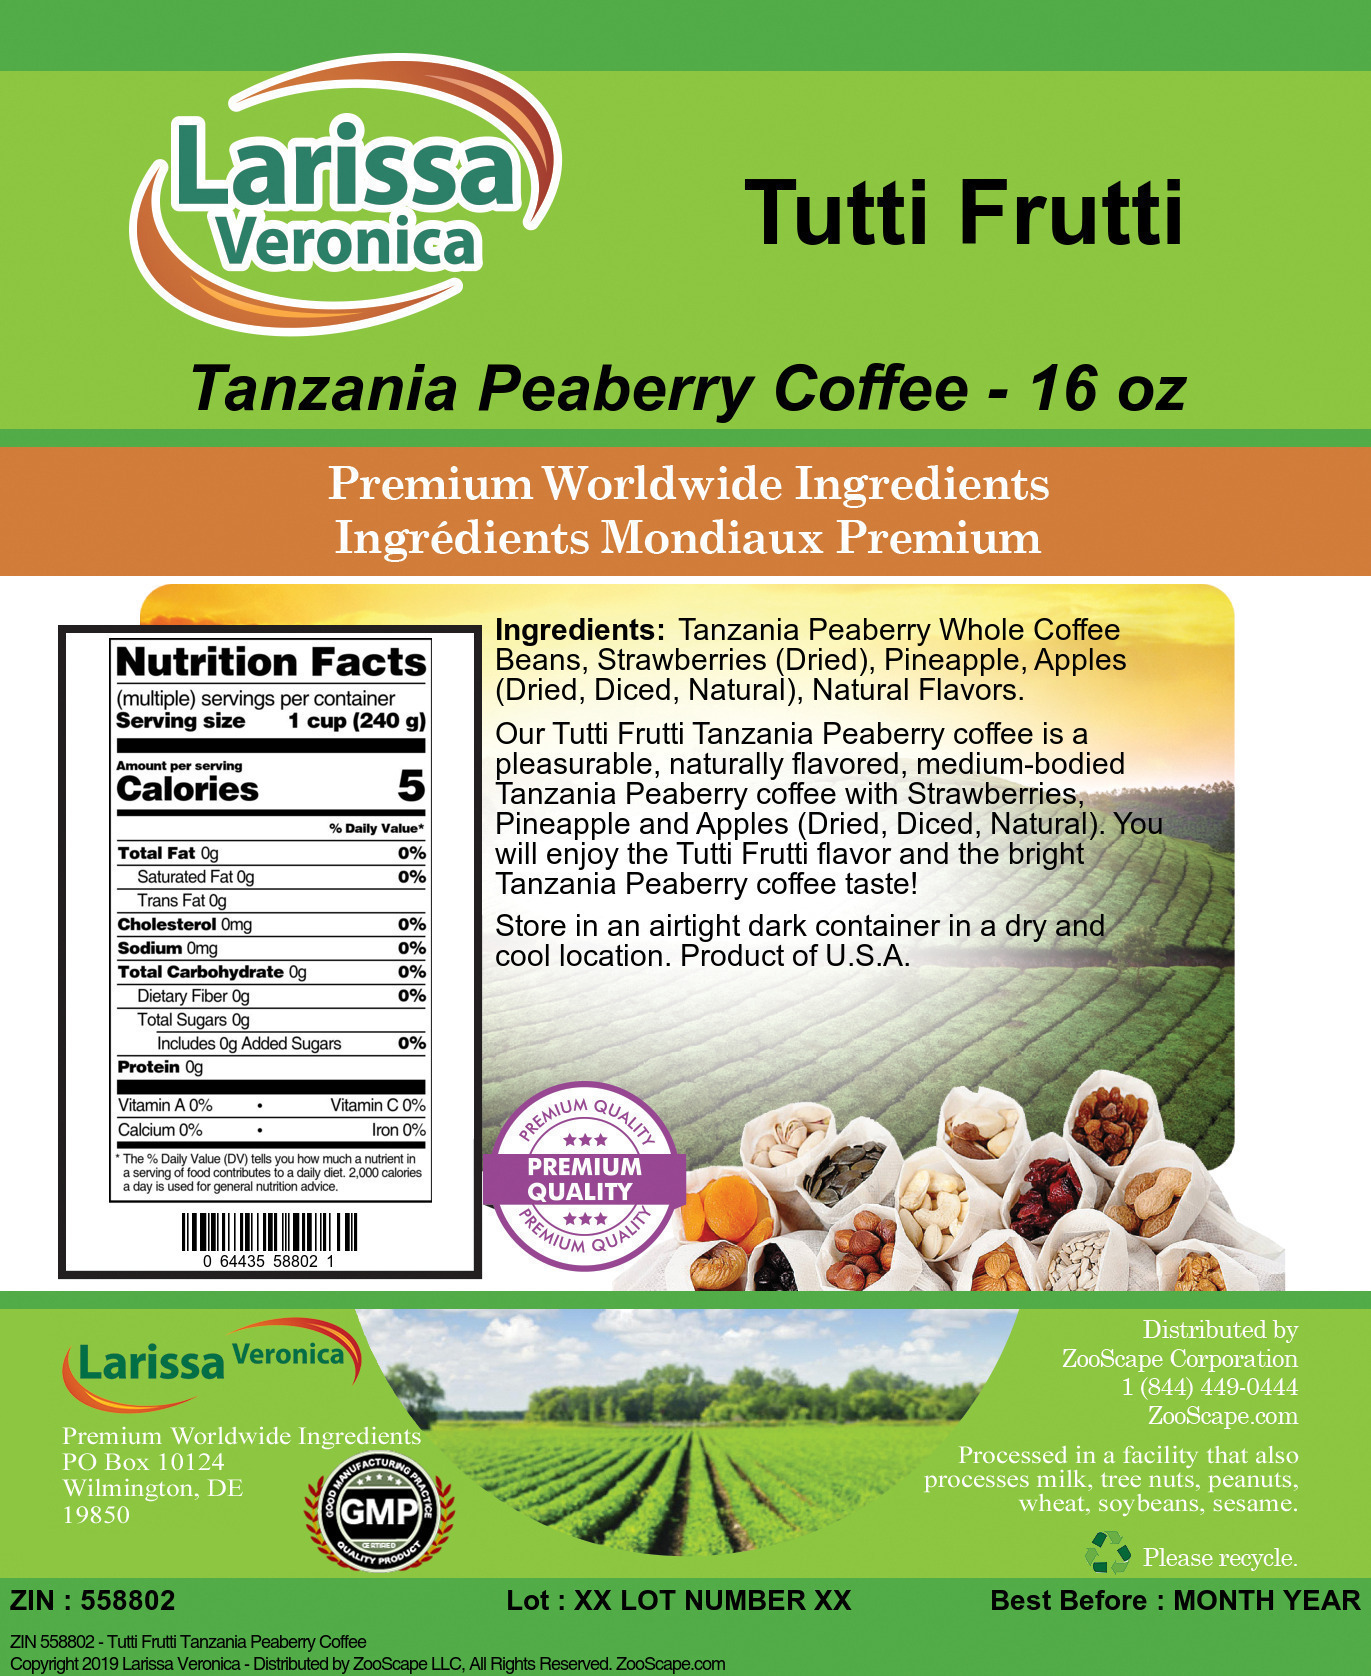 Tutti Frutti Tanzania Peaberry Coffee - Label